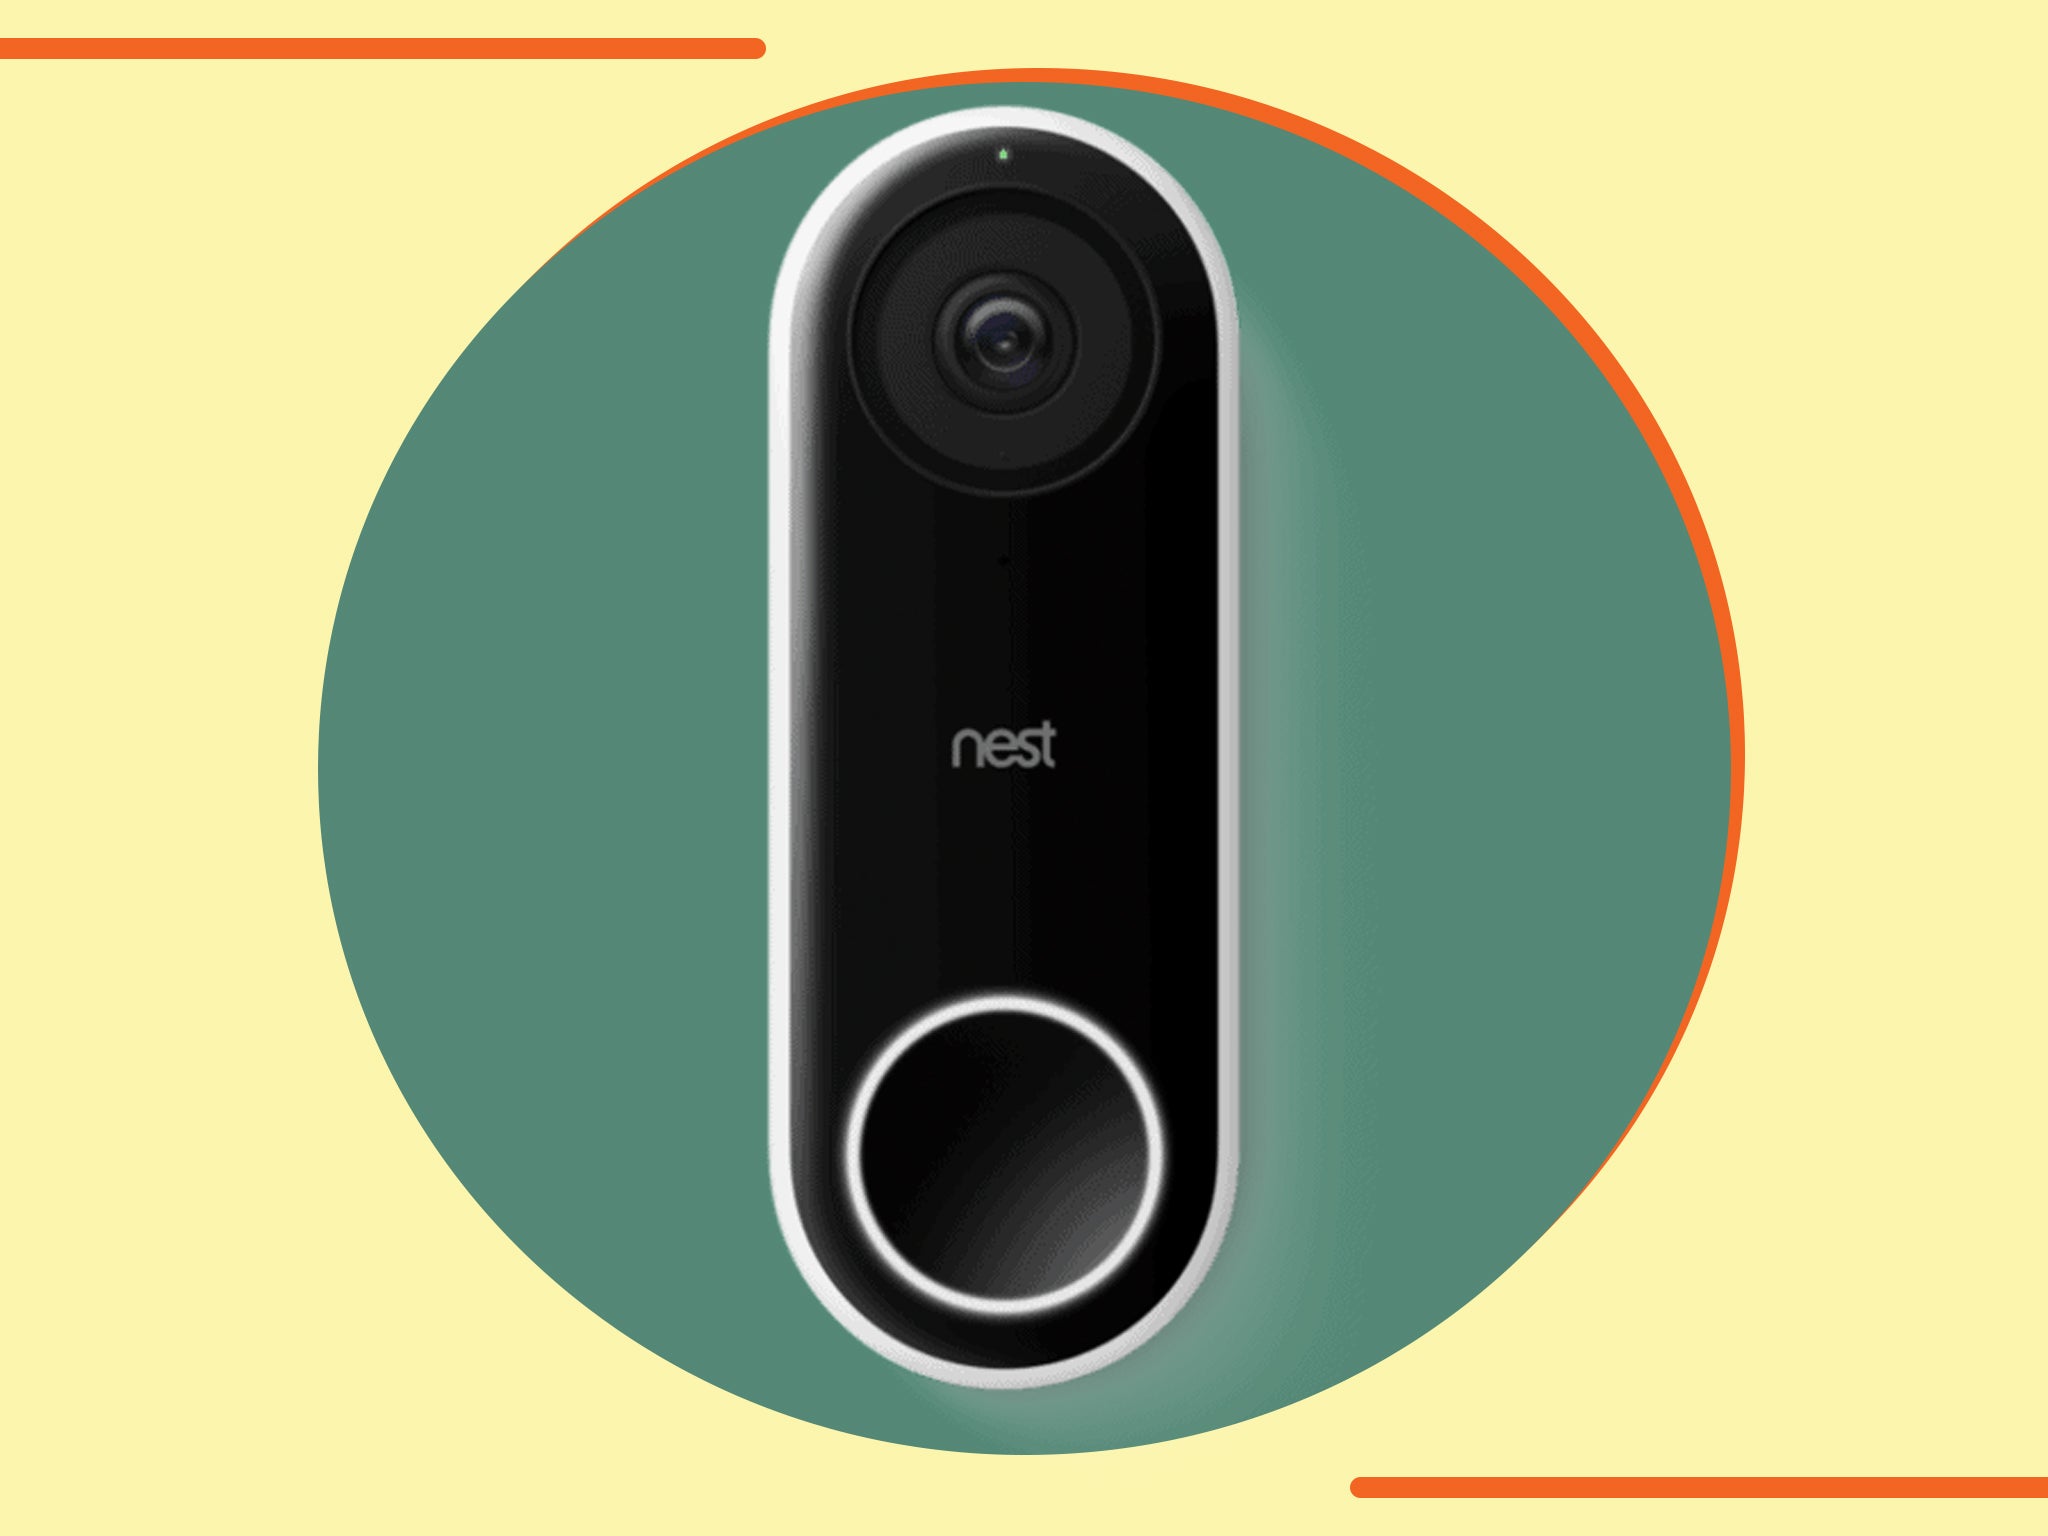 Google nest doorbell review: A smart doorbell with premium 